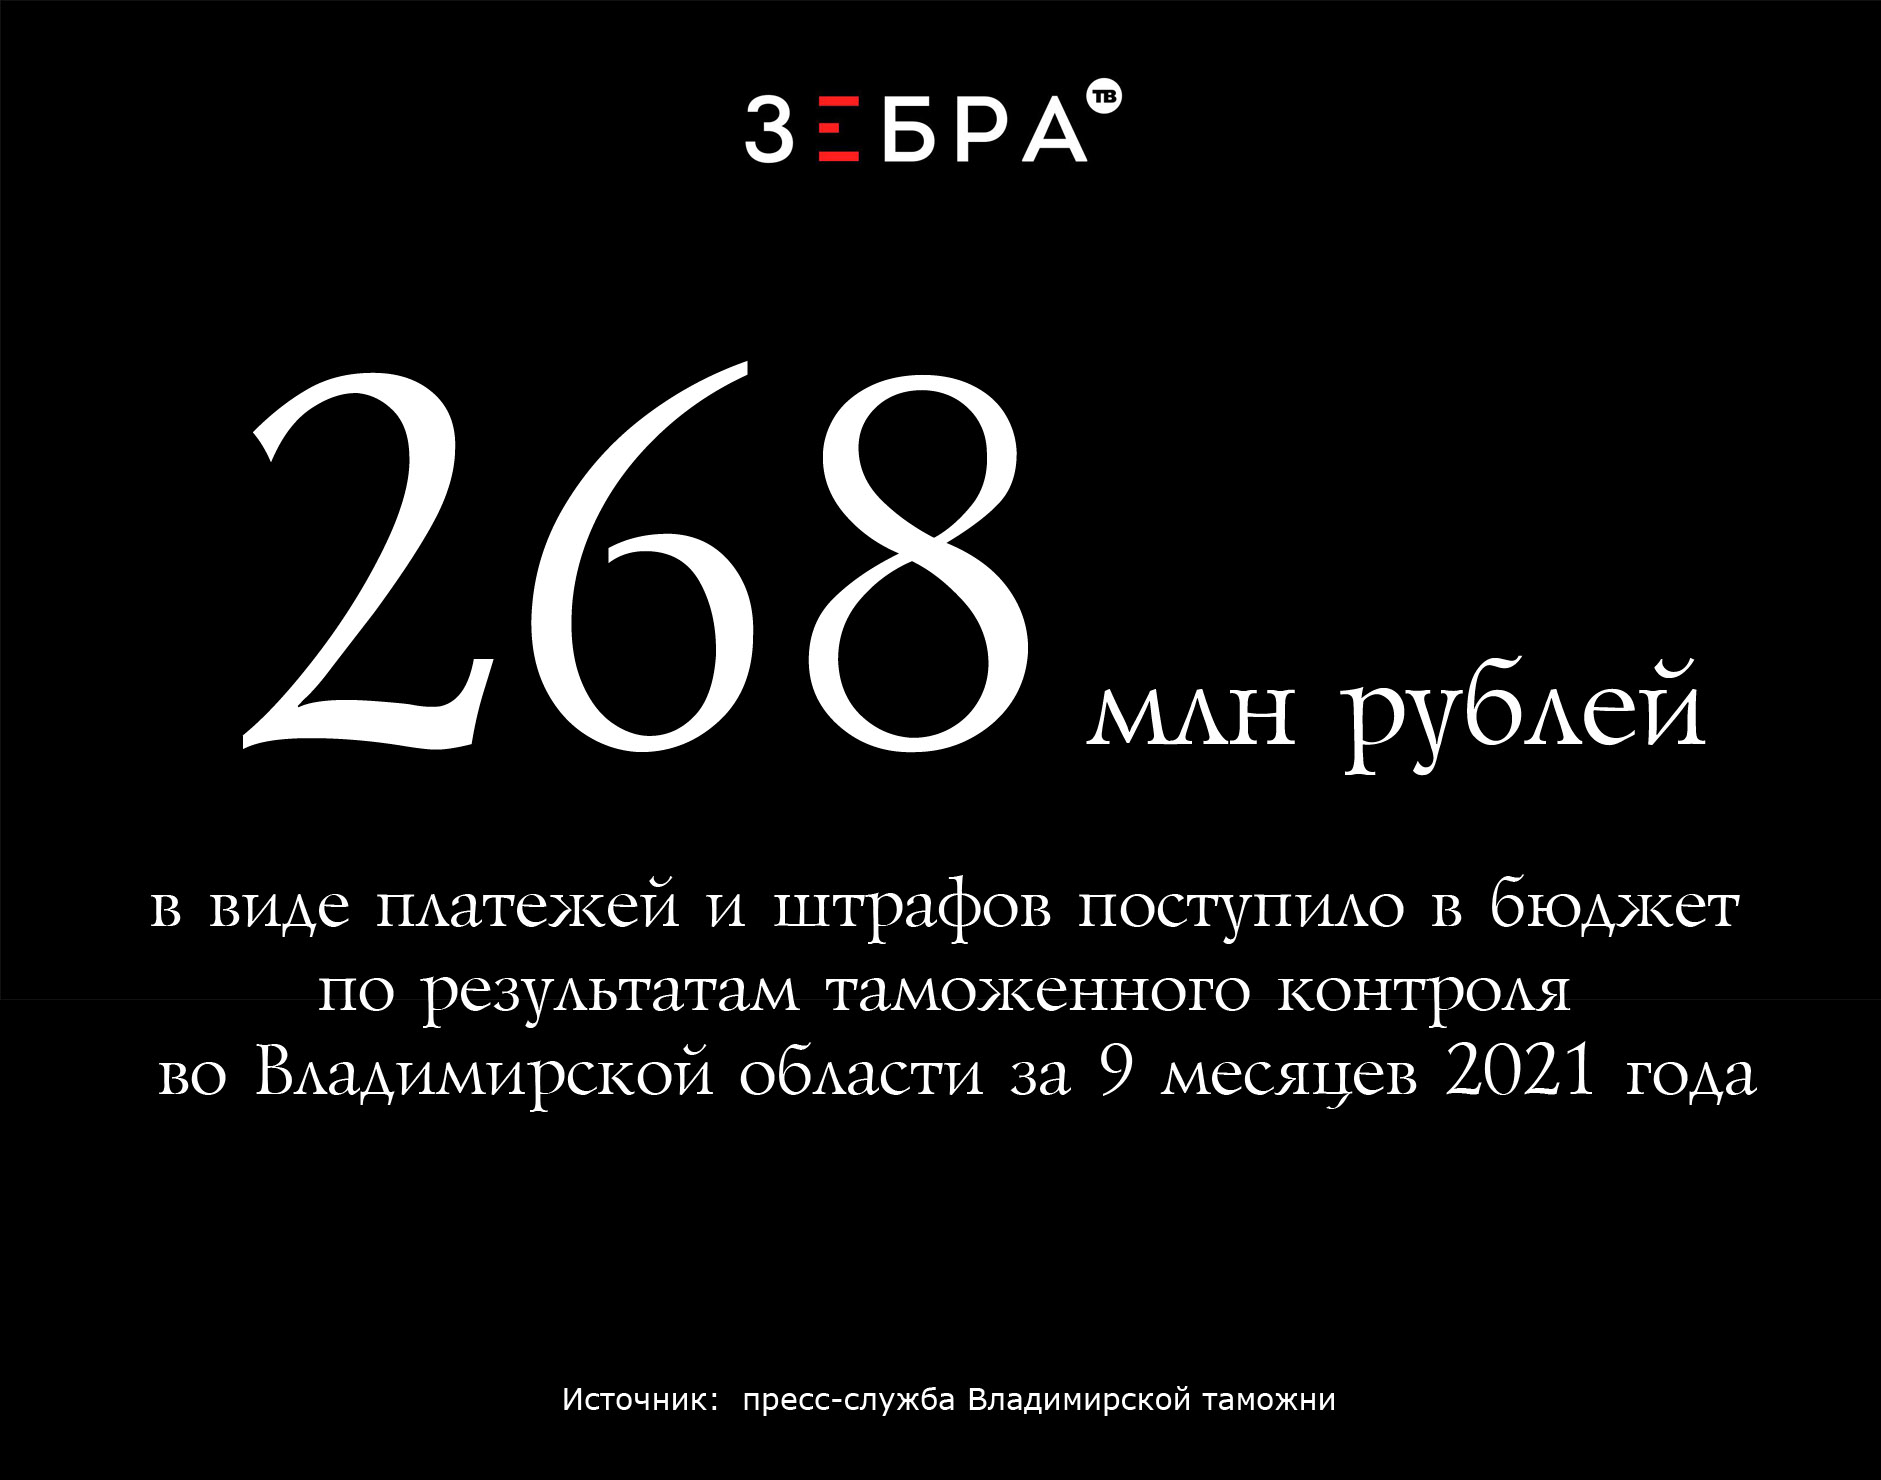 268 миллионов рублей в виде платежей и штрафов поступило в бюджет по результатам таможенного контроля во Владимирской области за 9 месяцев 2021 года